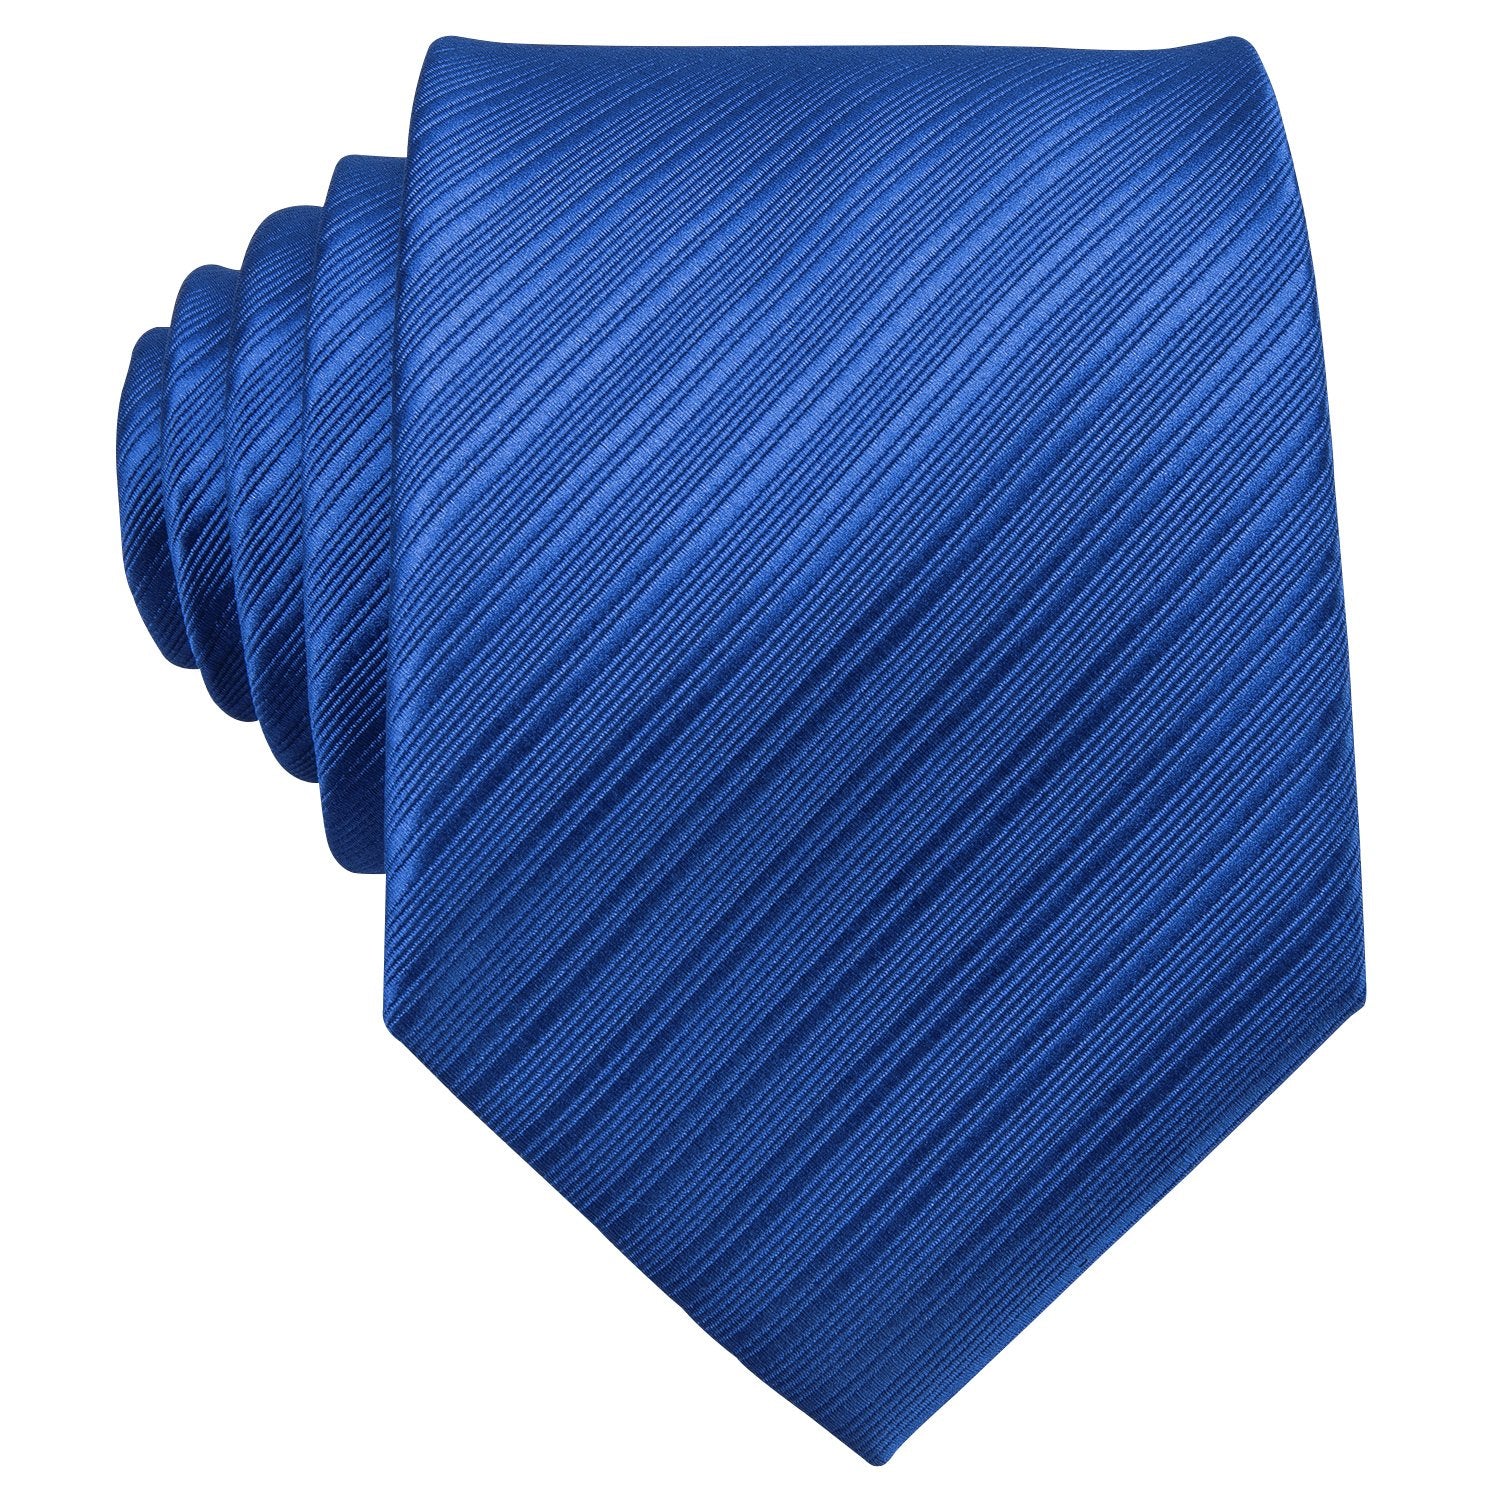 Blue Striped Silk Men's Tie Hanky Cufflinks Set - barry-wang